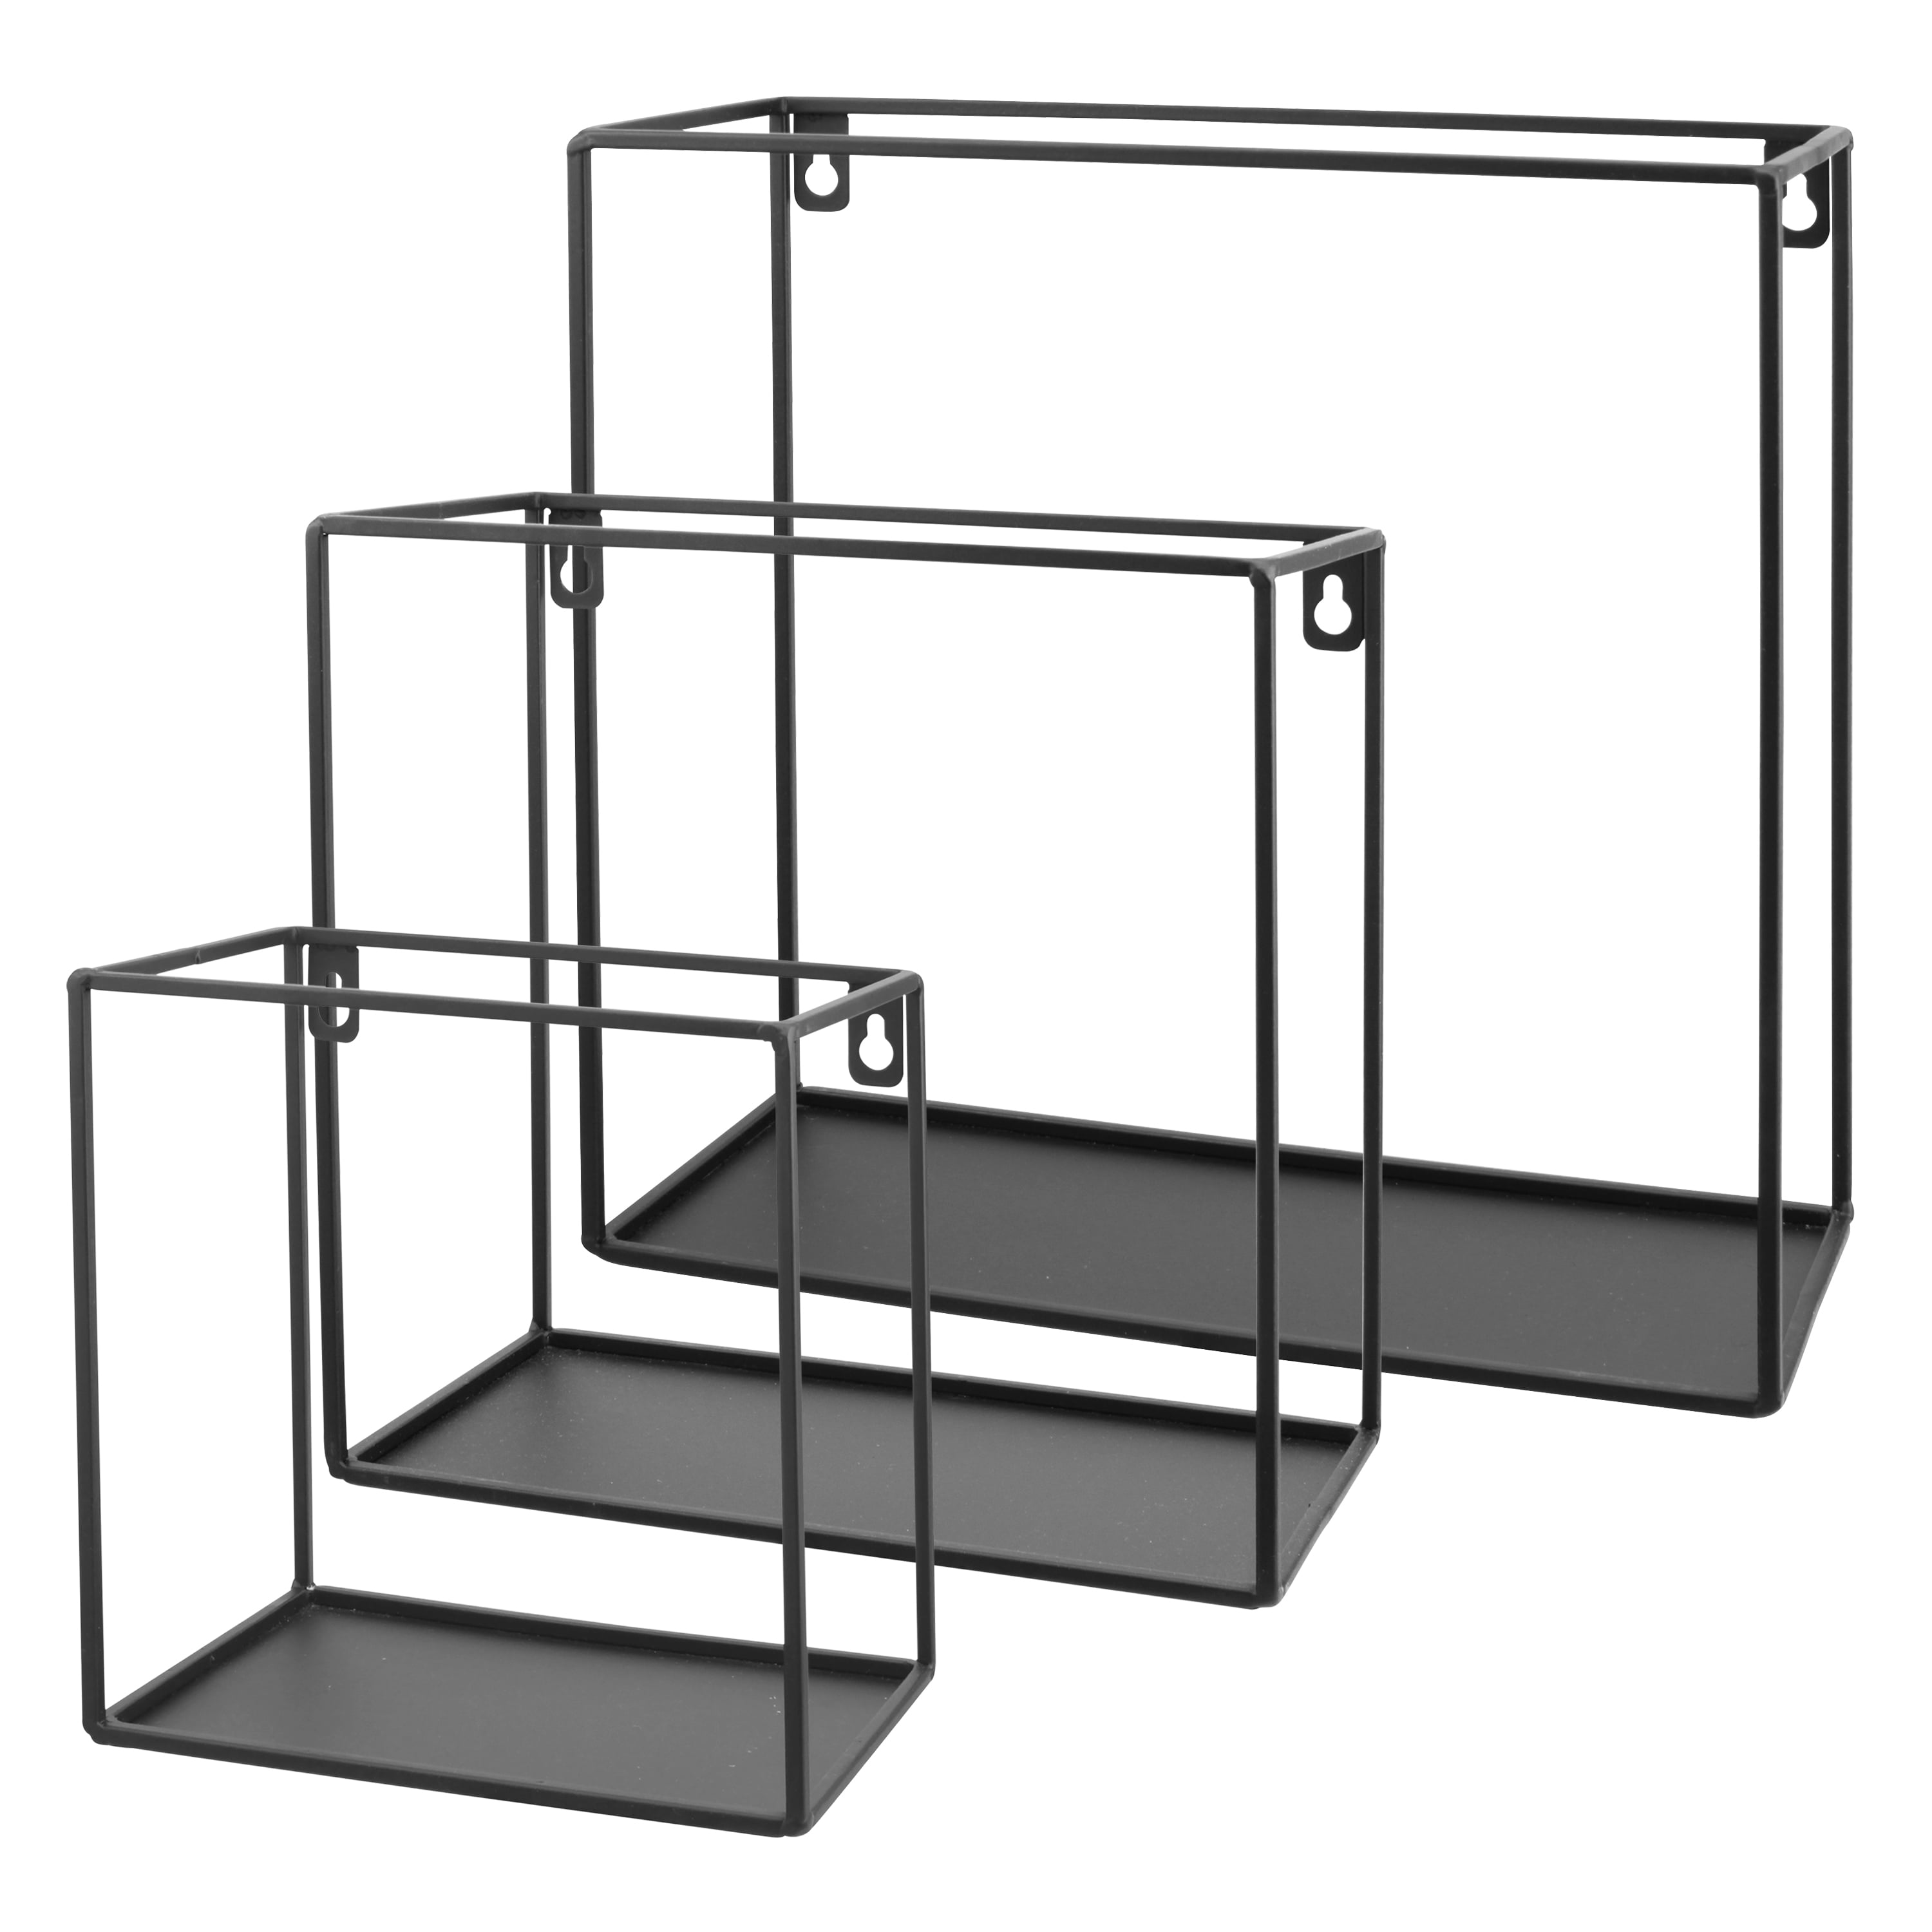 Square Shelves Set of Three Shelves Geometric Shelves 